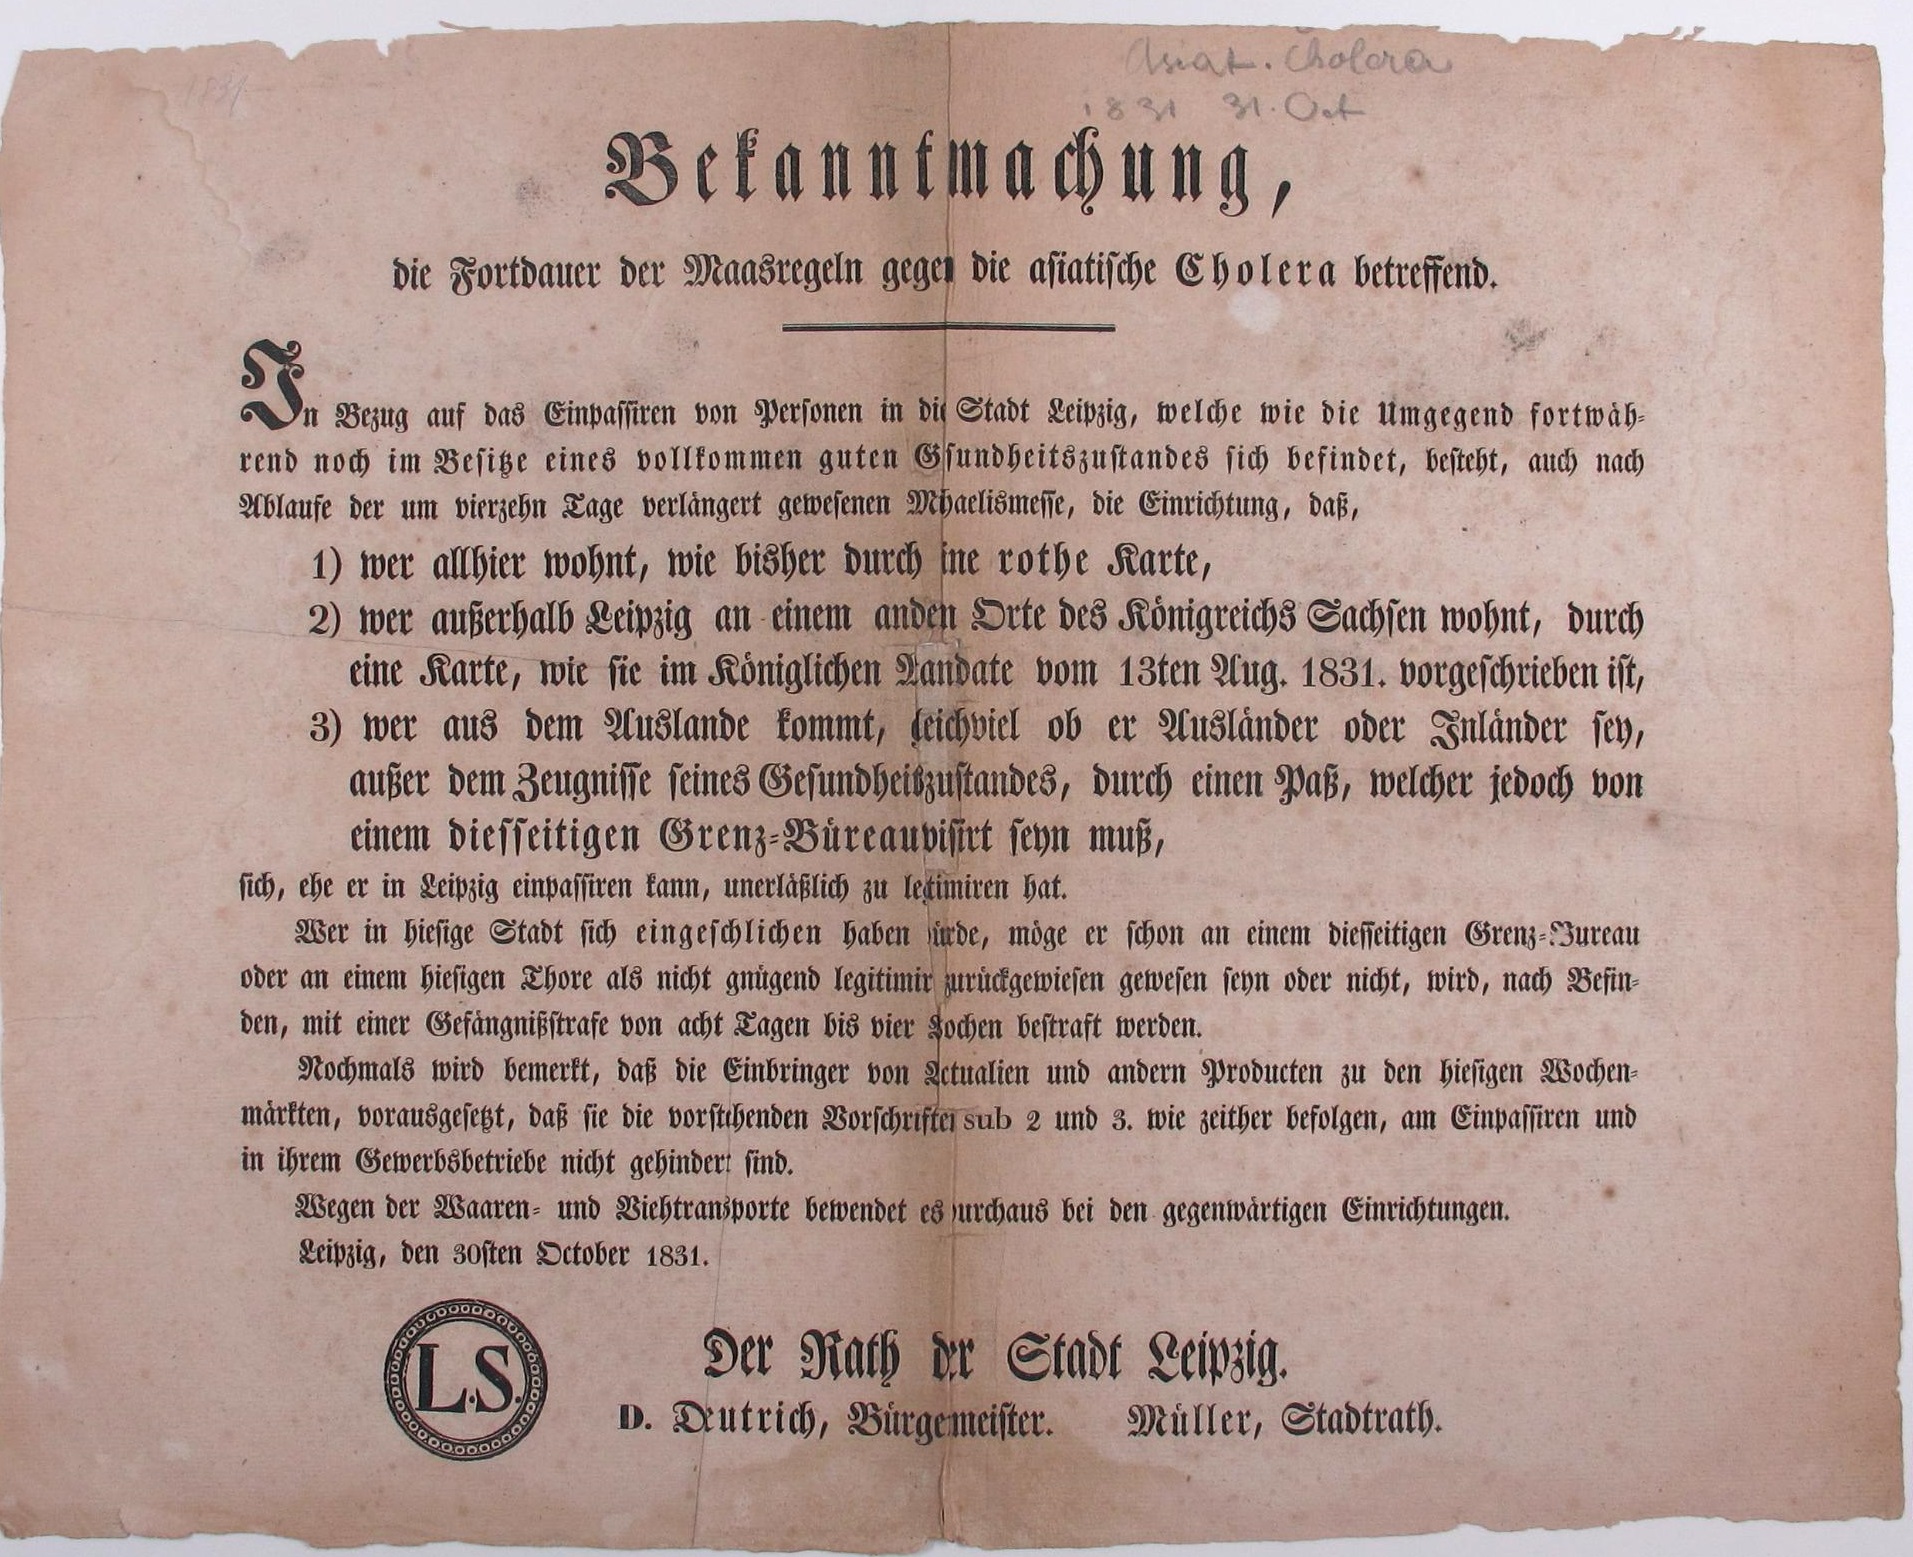 Bekanntmachung des Rates der Stadt Leipzig betreffend Legitimierung, Gesundheitsnachweis und Zugang zur Stadt anlässlich der grassierenden asiatischen Cholera, 30. Oktober 1831